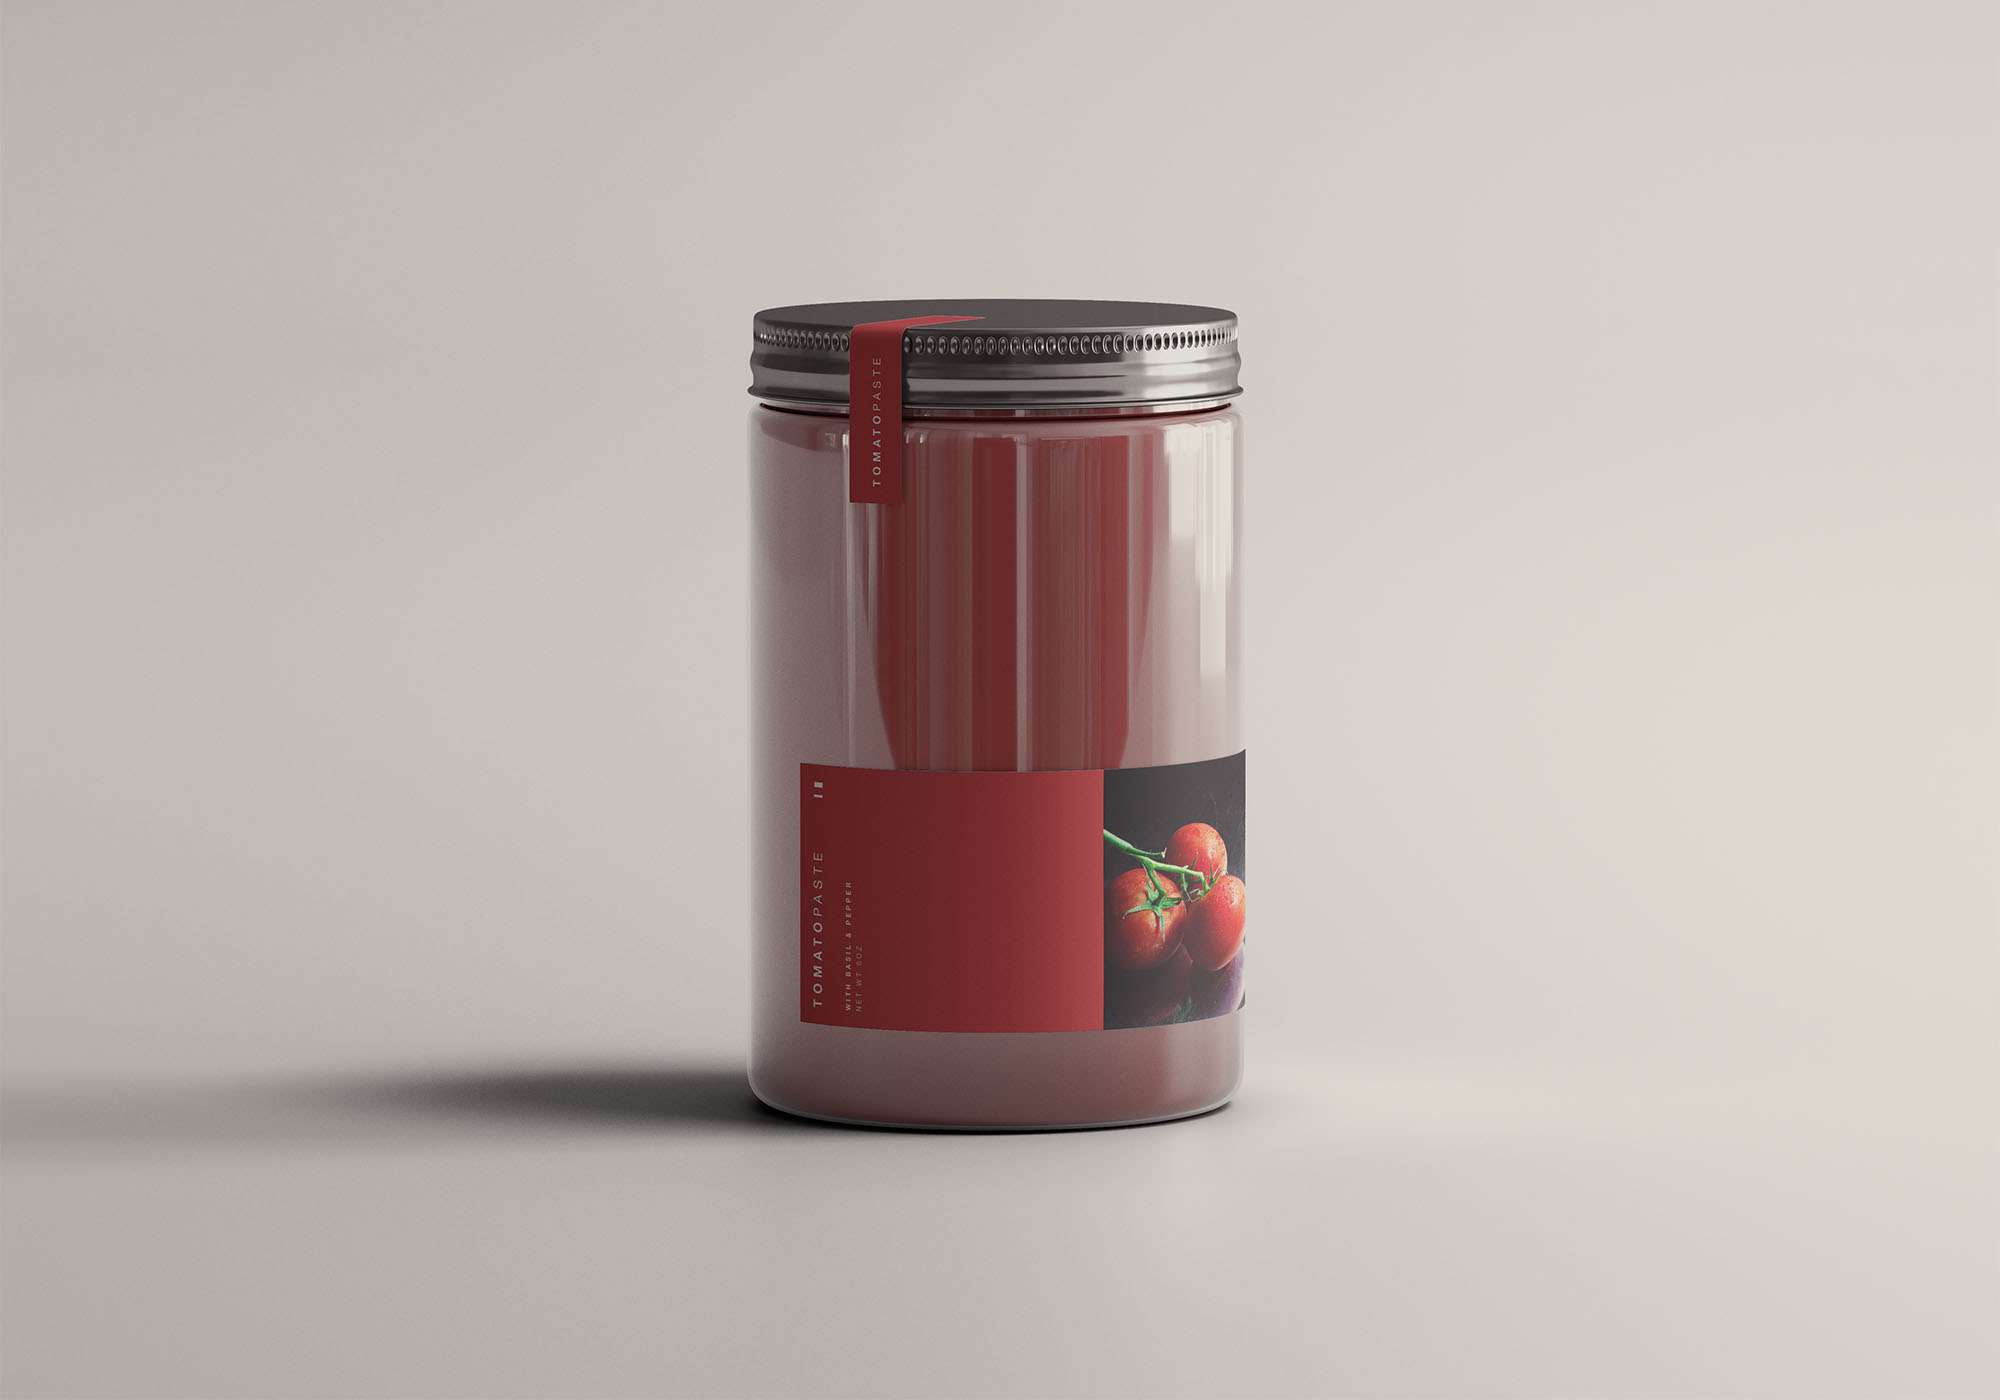 番茄酱罐包装样机 Tomato Jar Mockup 样机素材 第1张